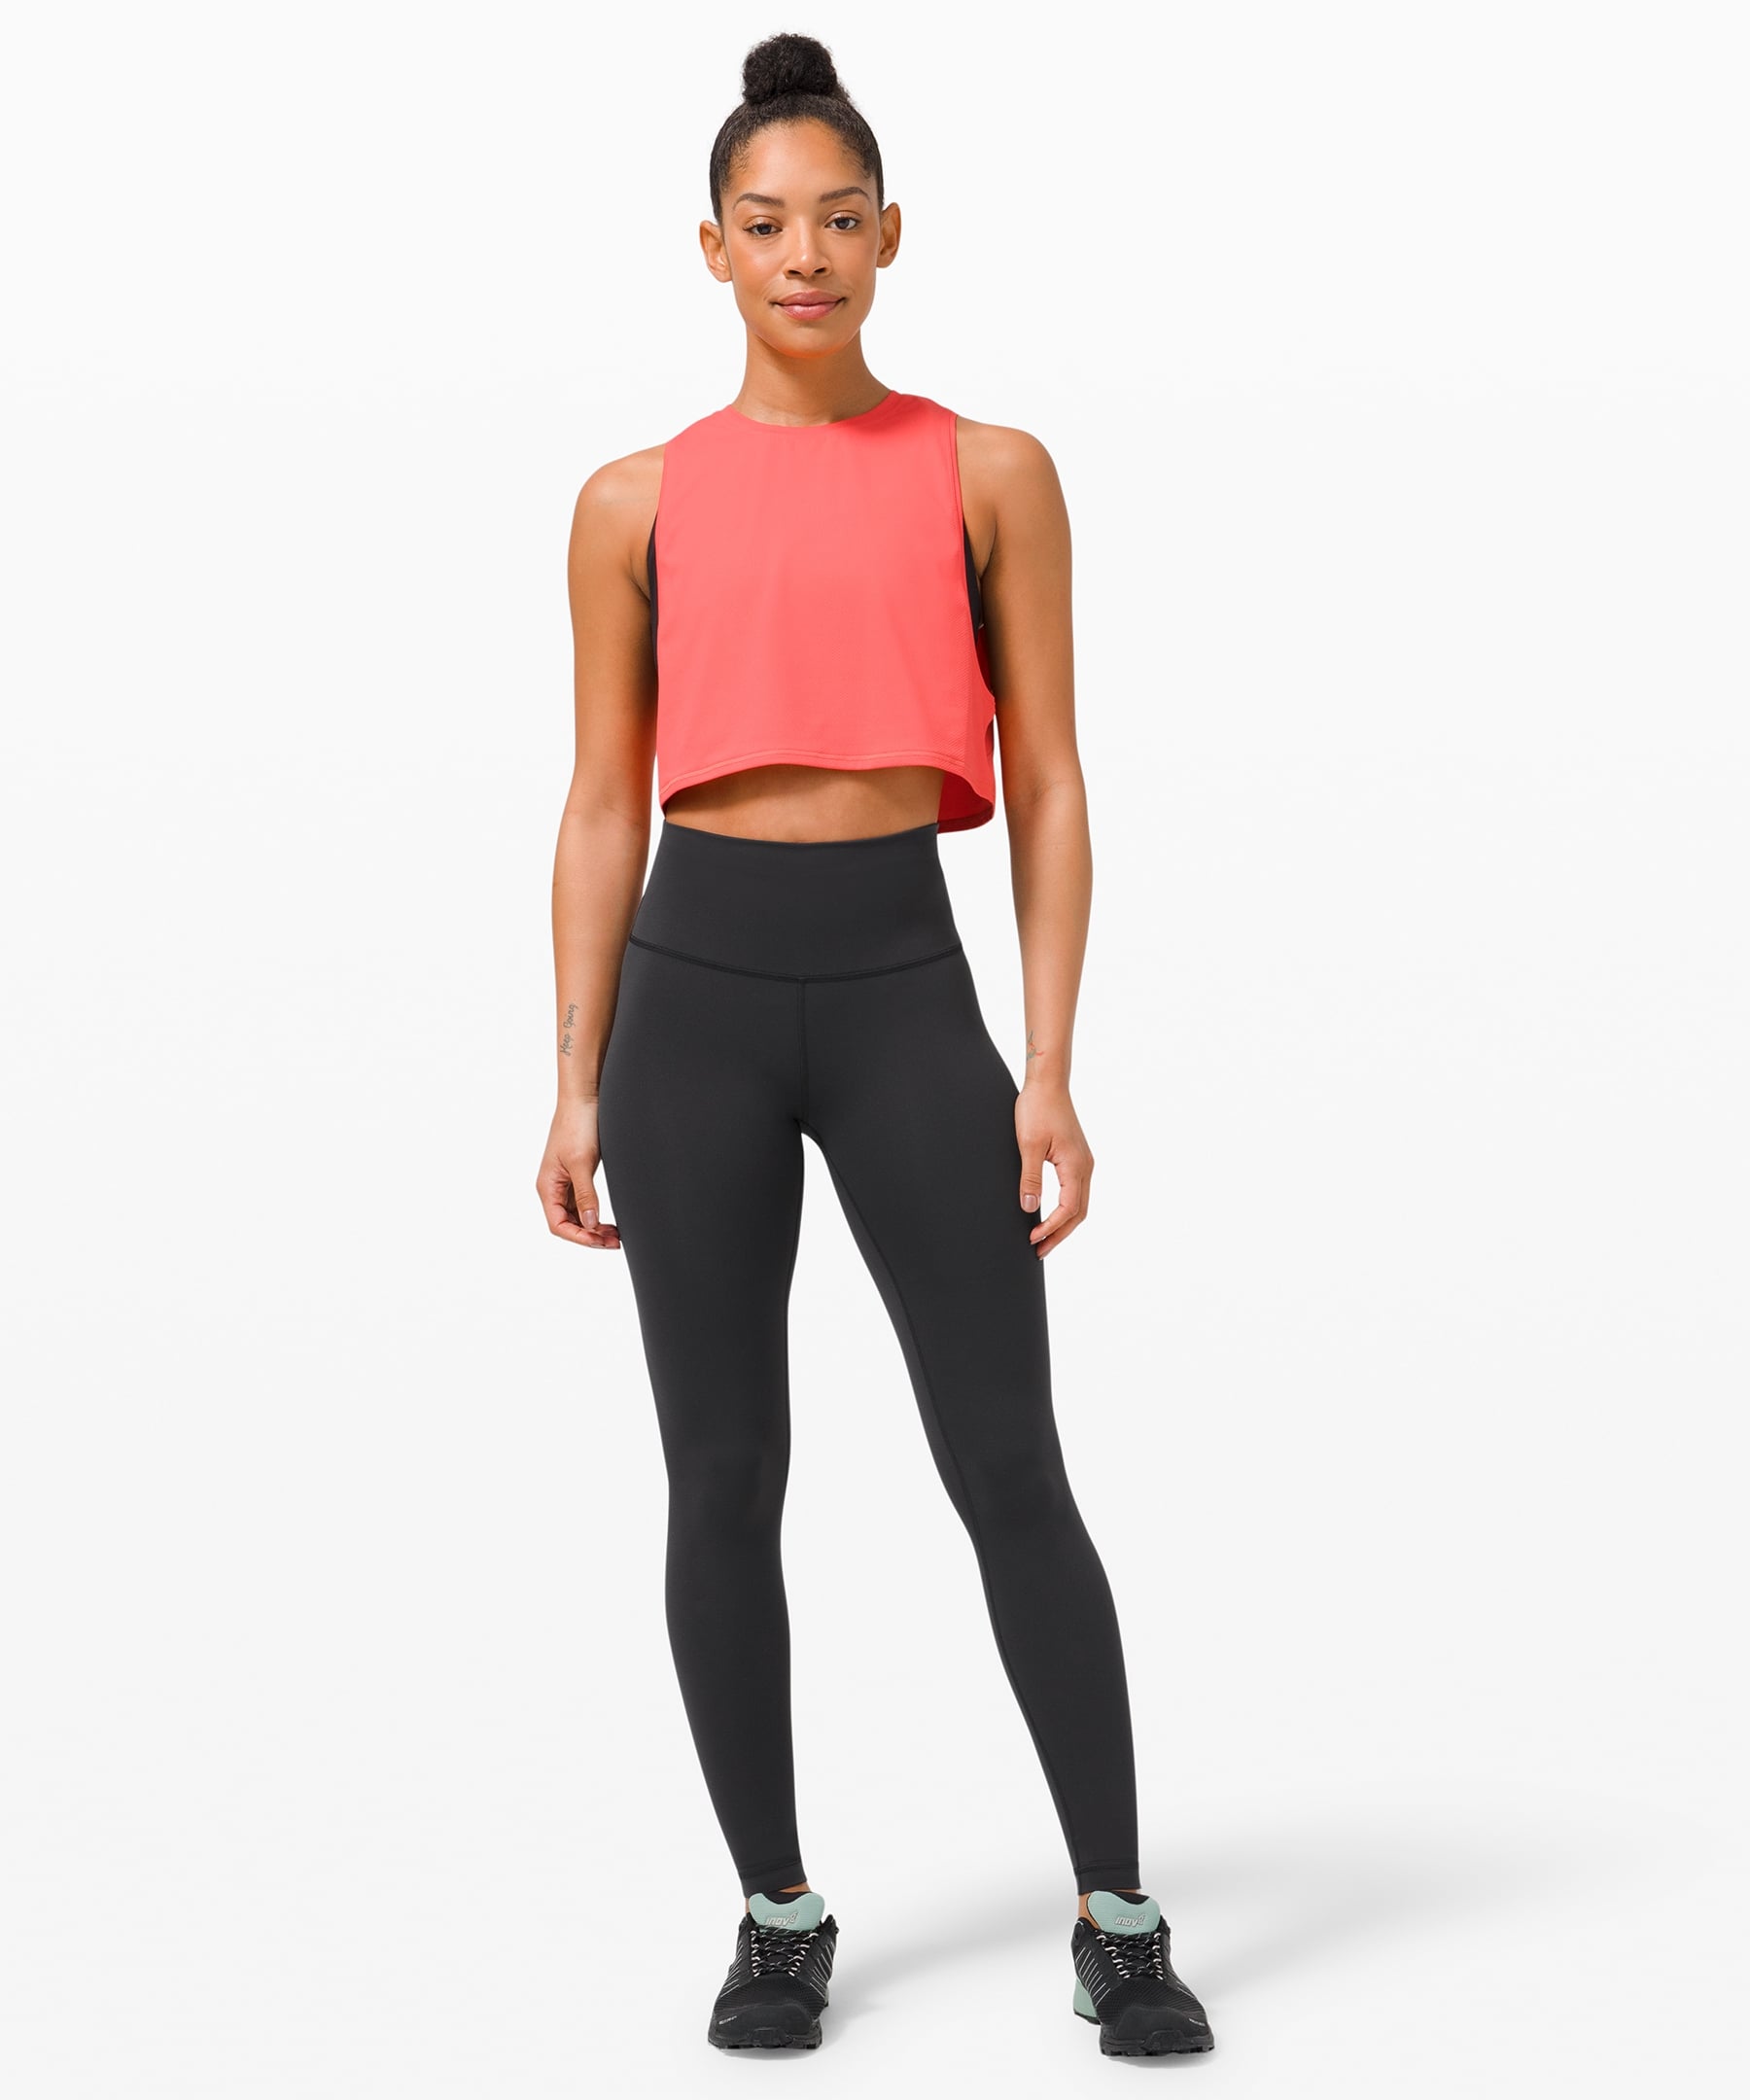 Lululemon Leggings Size 4 Black Cropped Yoga Pants Athletic Wear